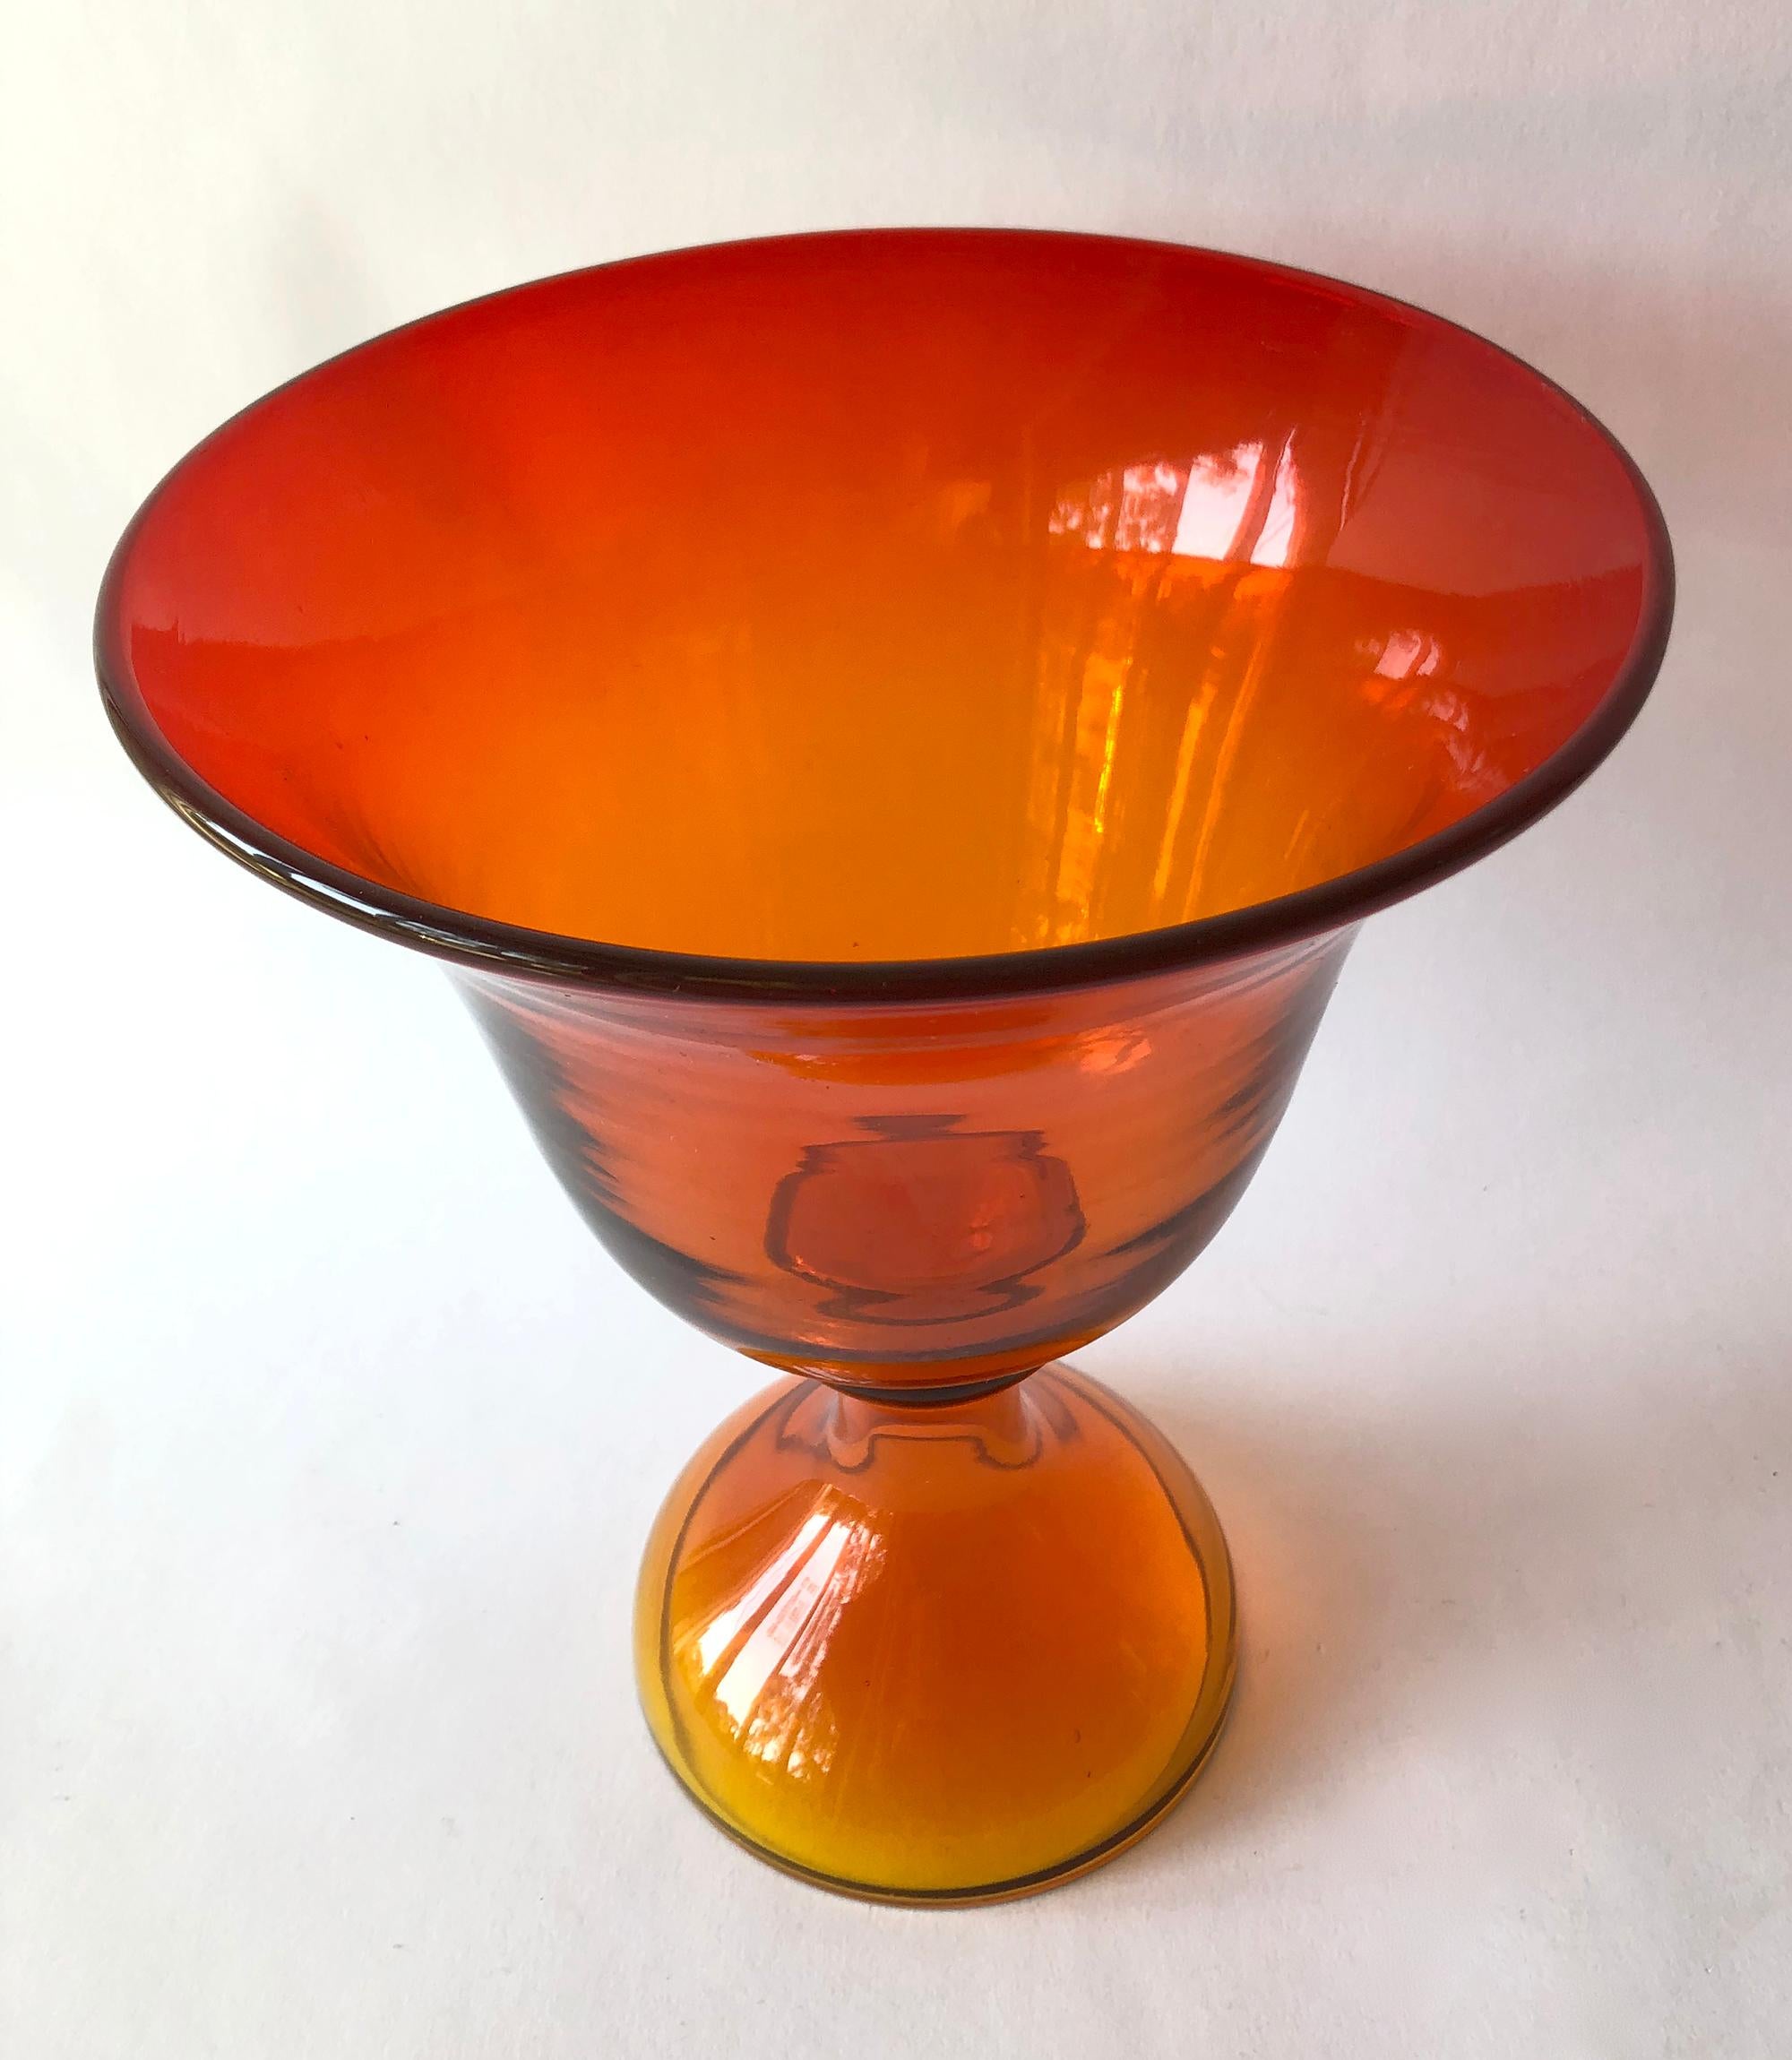 Blenko tangerine footed bowl. Measures 10.5